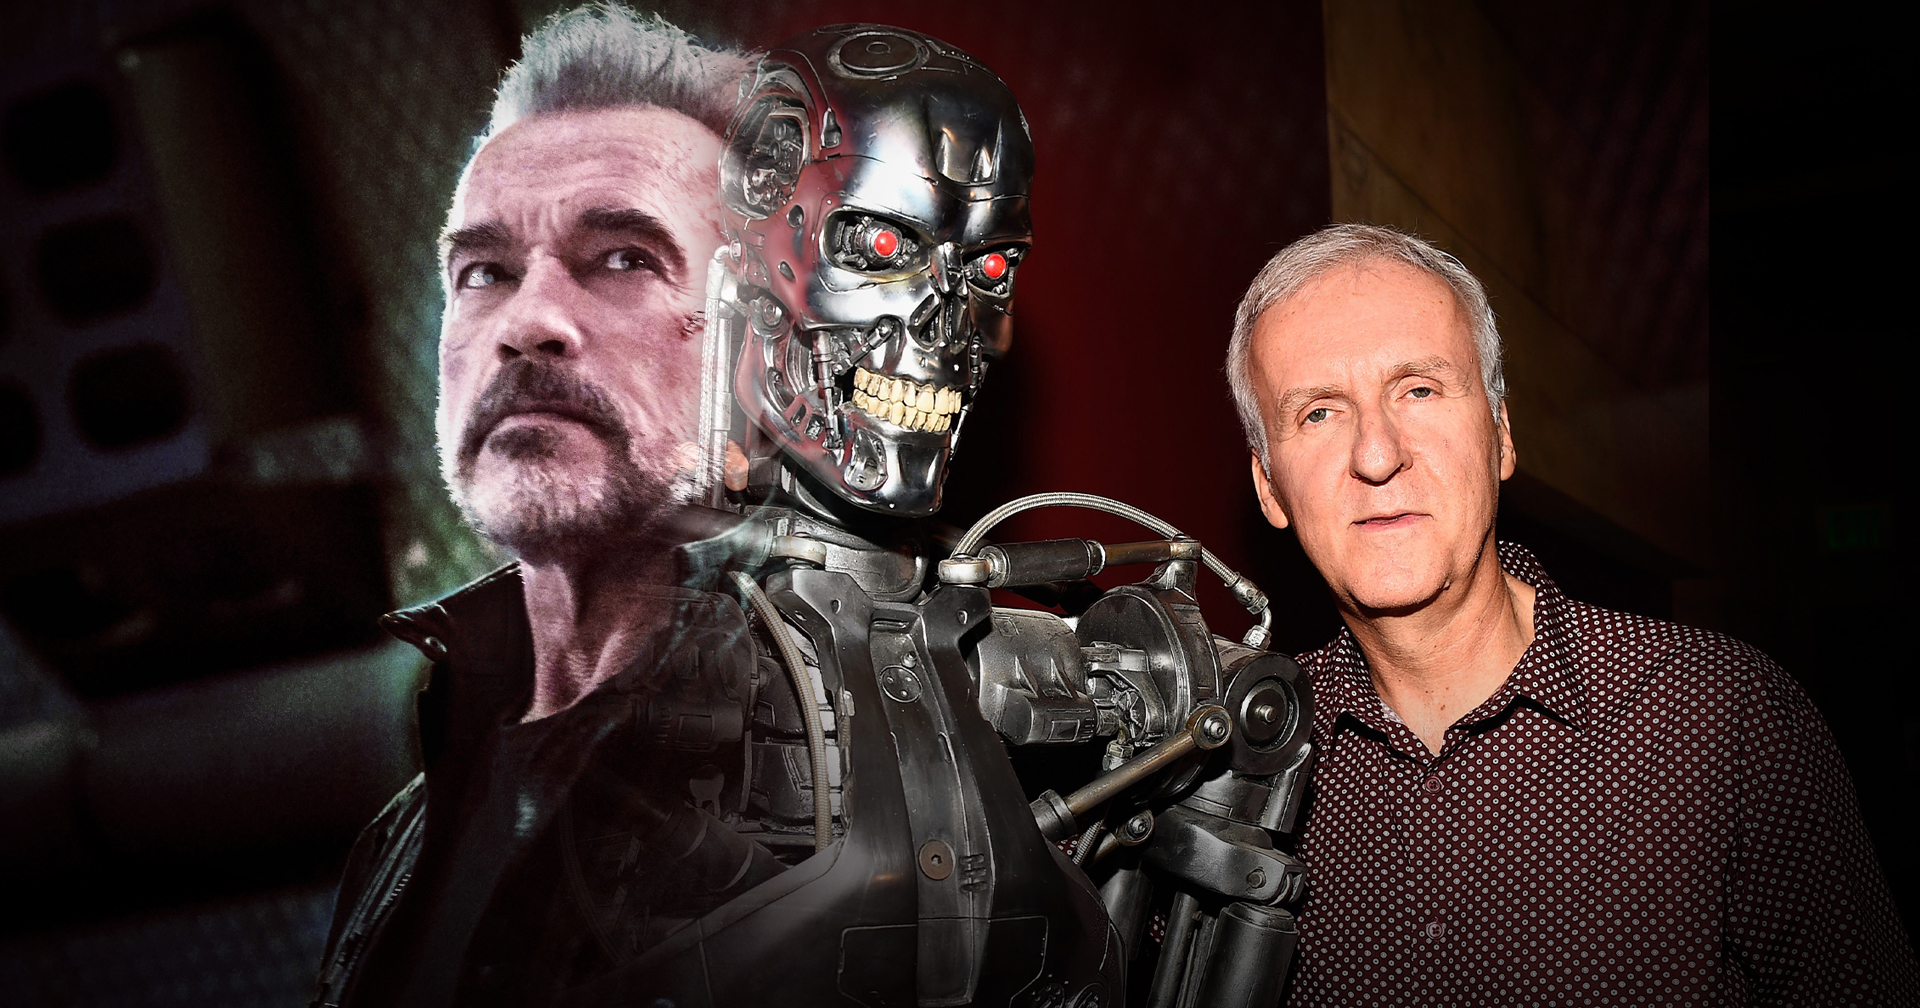 James Cameron ยังไม่ทิ้งลูกรัก เผยกำลังหารือกับทีมงานเกี่ยวกับหนัง ‘Terminator’ เรื่องใหม่!!!